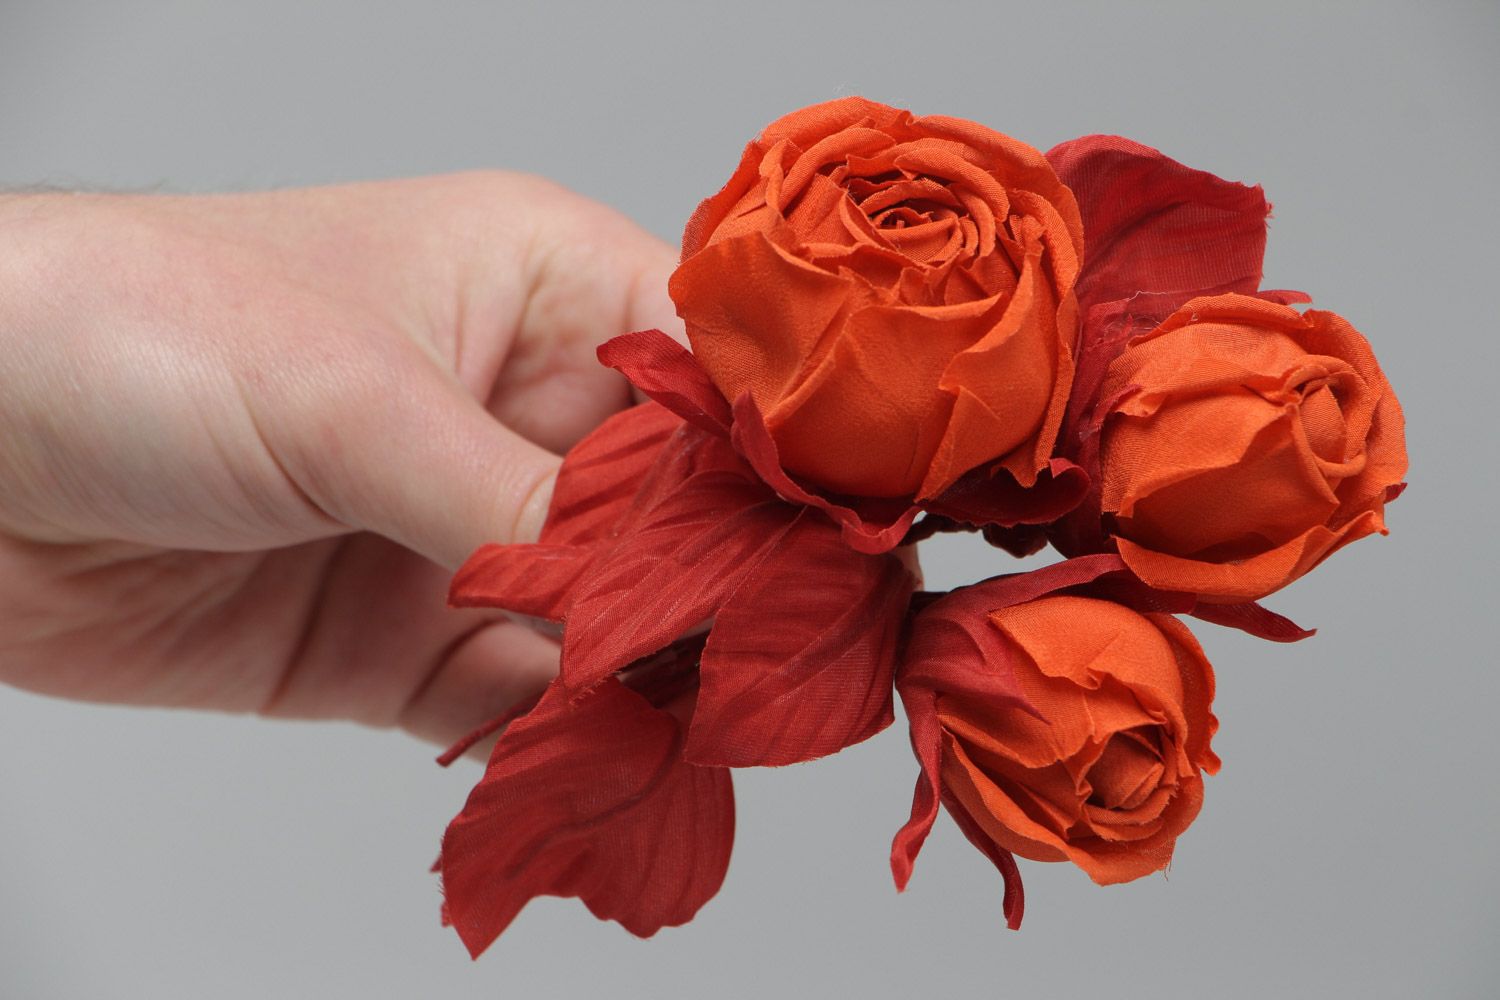 Брошь цветы из ткани красные розы яркая крупная необычная красивая ручной работы фото 5